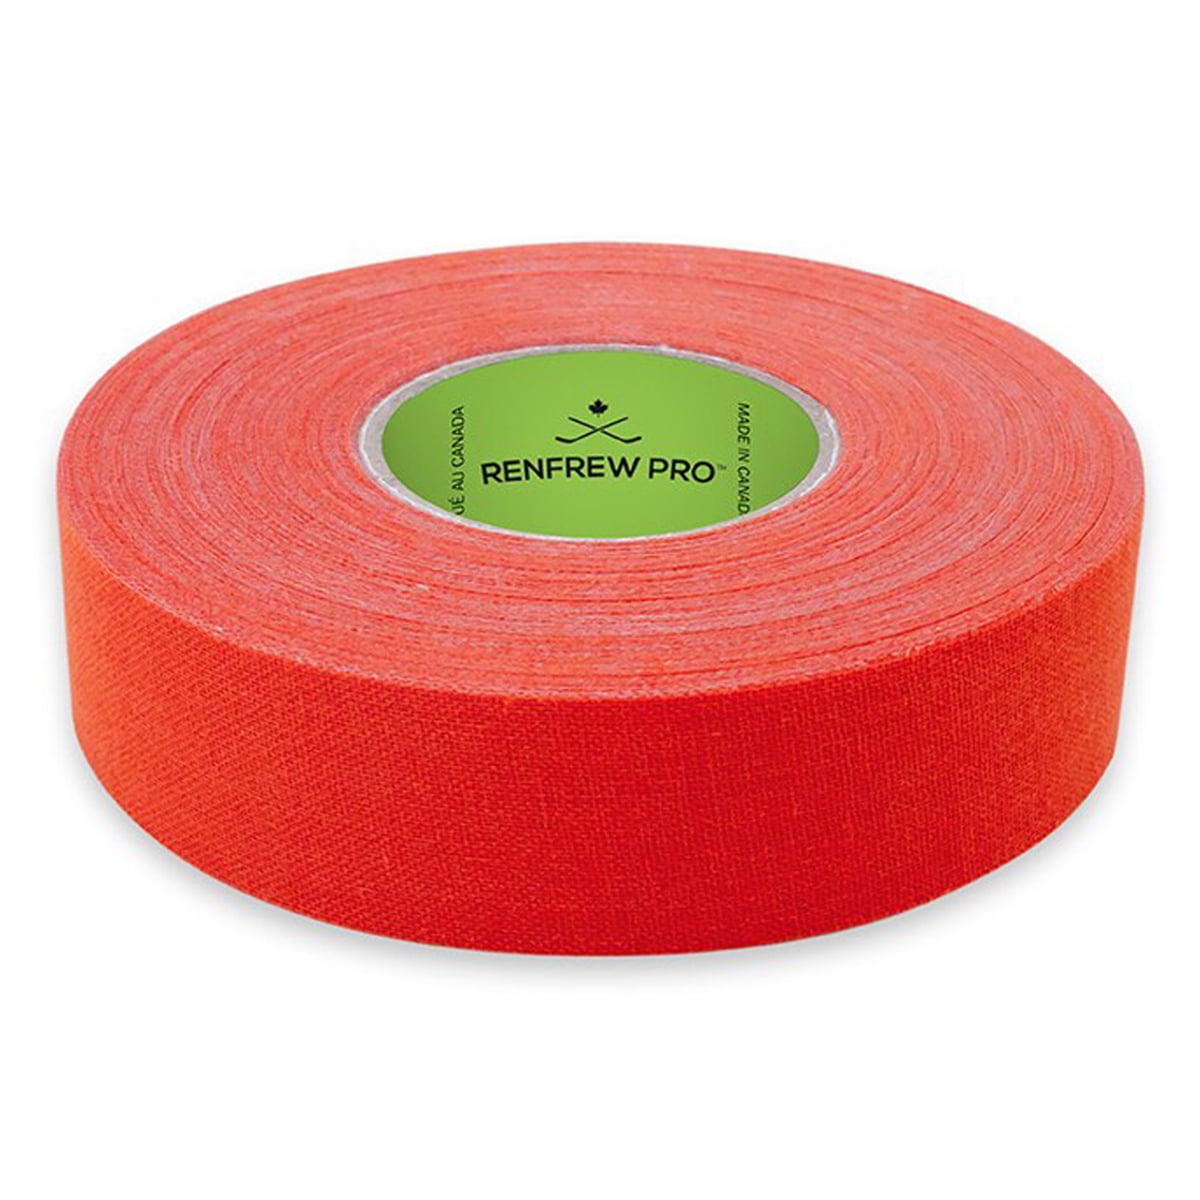 cloth hockey tape Orange 3 Rolls 1” By 27yards 